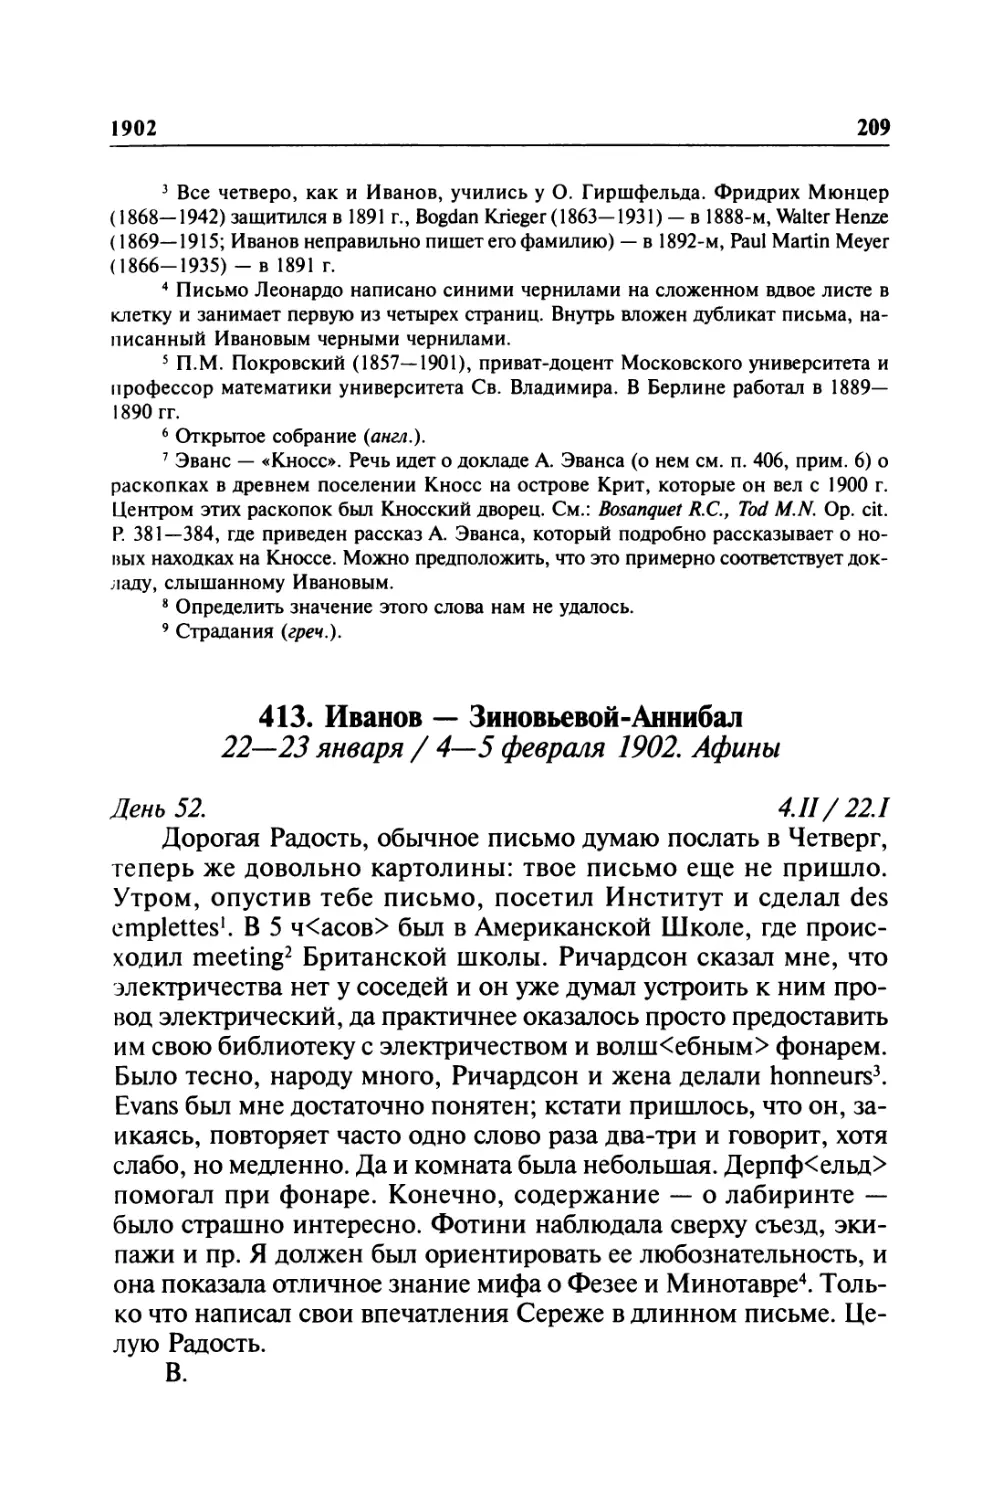 413. Иванов — Зиновьевой-Аннибал. 22—23 января / 4—5 февраля 1902. Афины